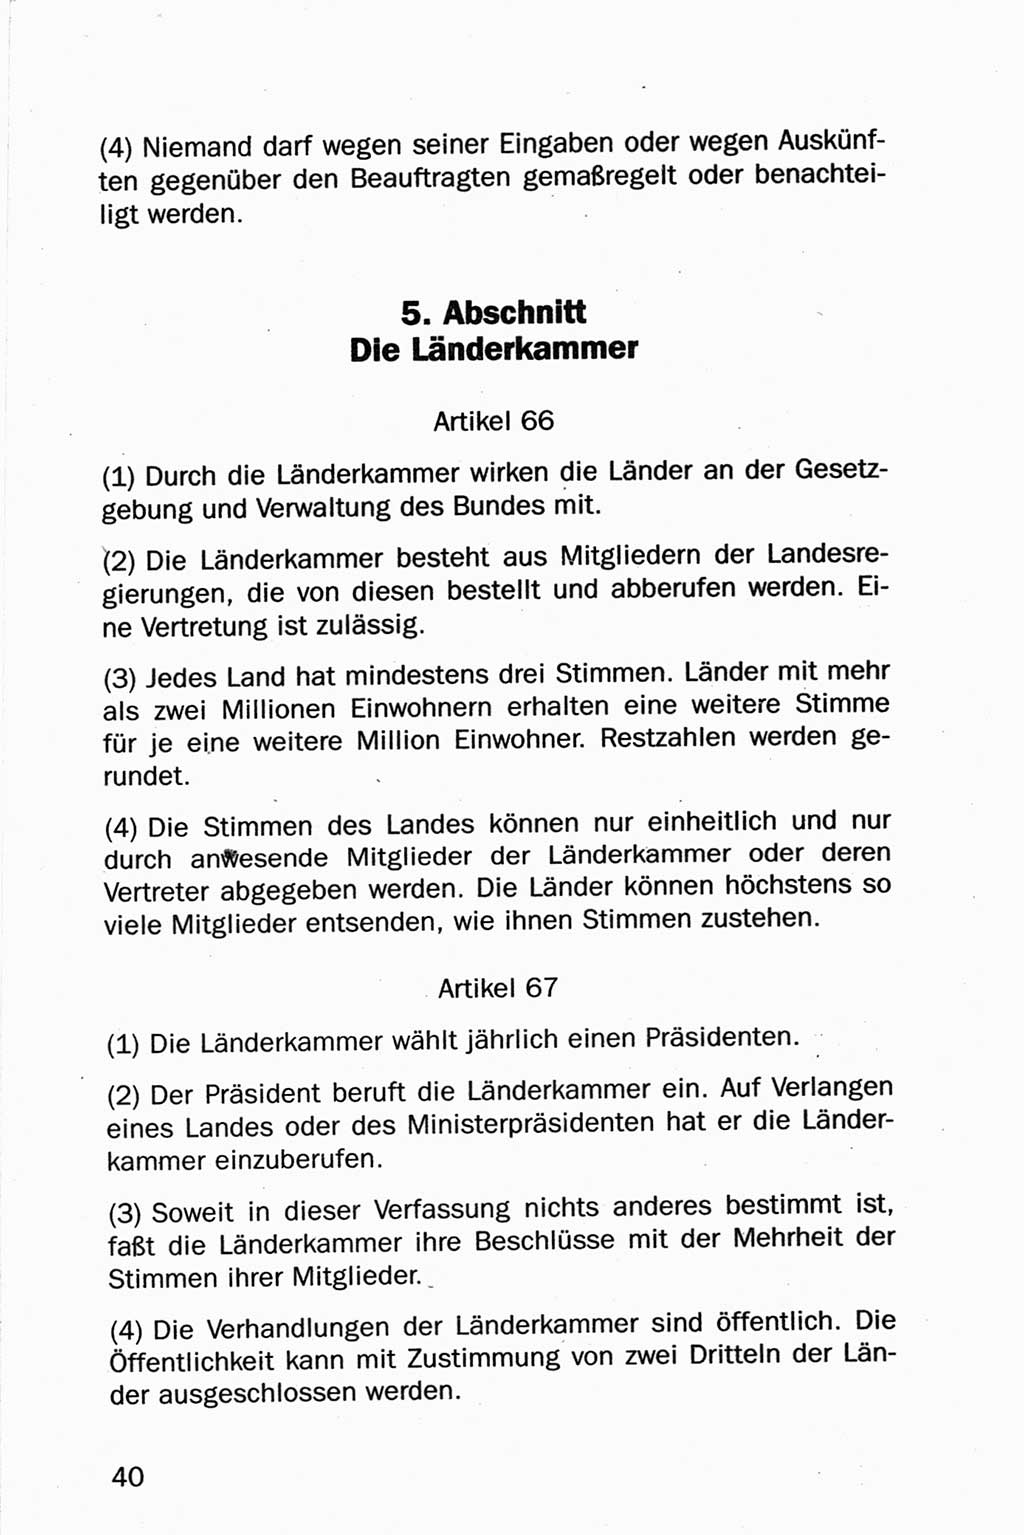 Entwurf Verfassung der Deutschen Demokratischen Republik (DDR), Arbeitsgruppe "Neue Verfassung der DDR" des Runden Tisches, Berlin 1990, Seite 40 (Entw. Verf. DDR 1990, S. 40)